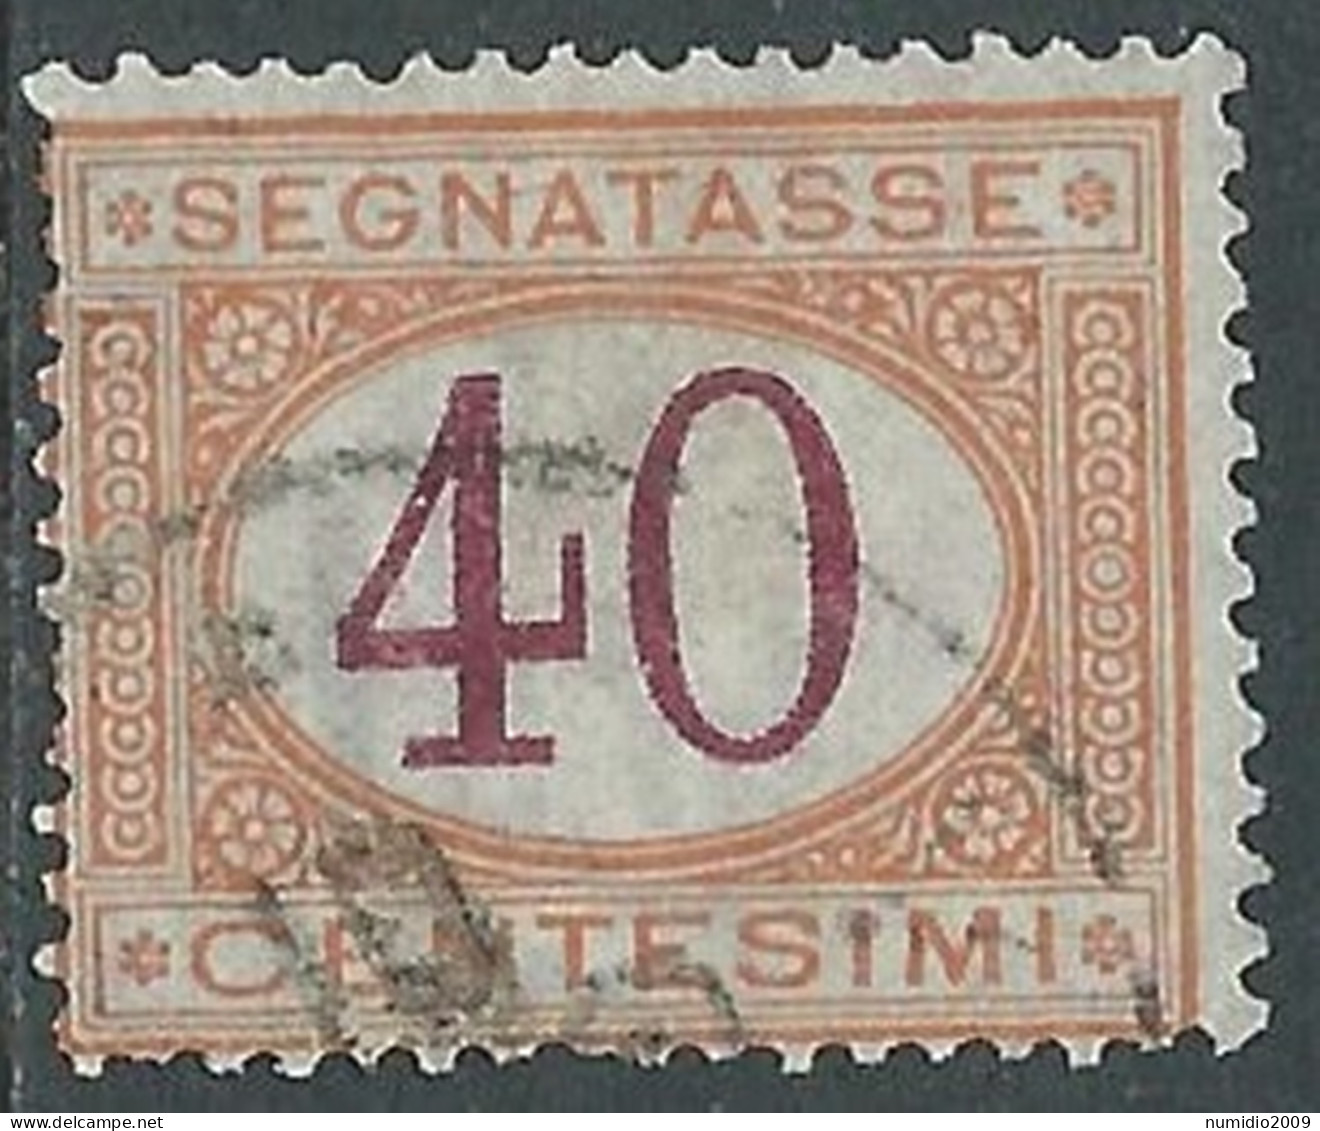 1890-94 REGNO SEGNATASSE USATO 40 CENT - P13-5 - Postage Due